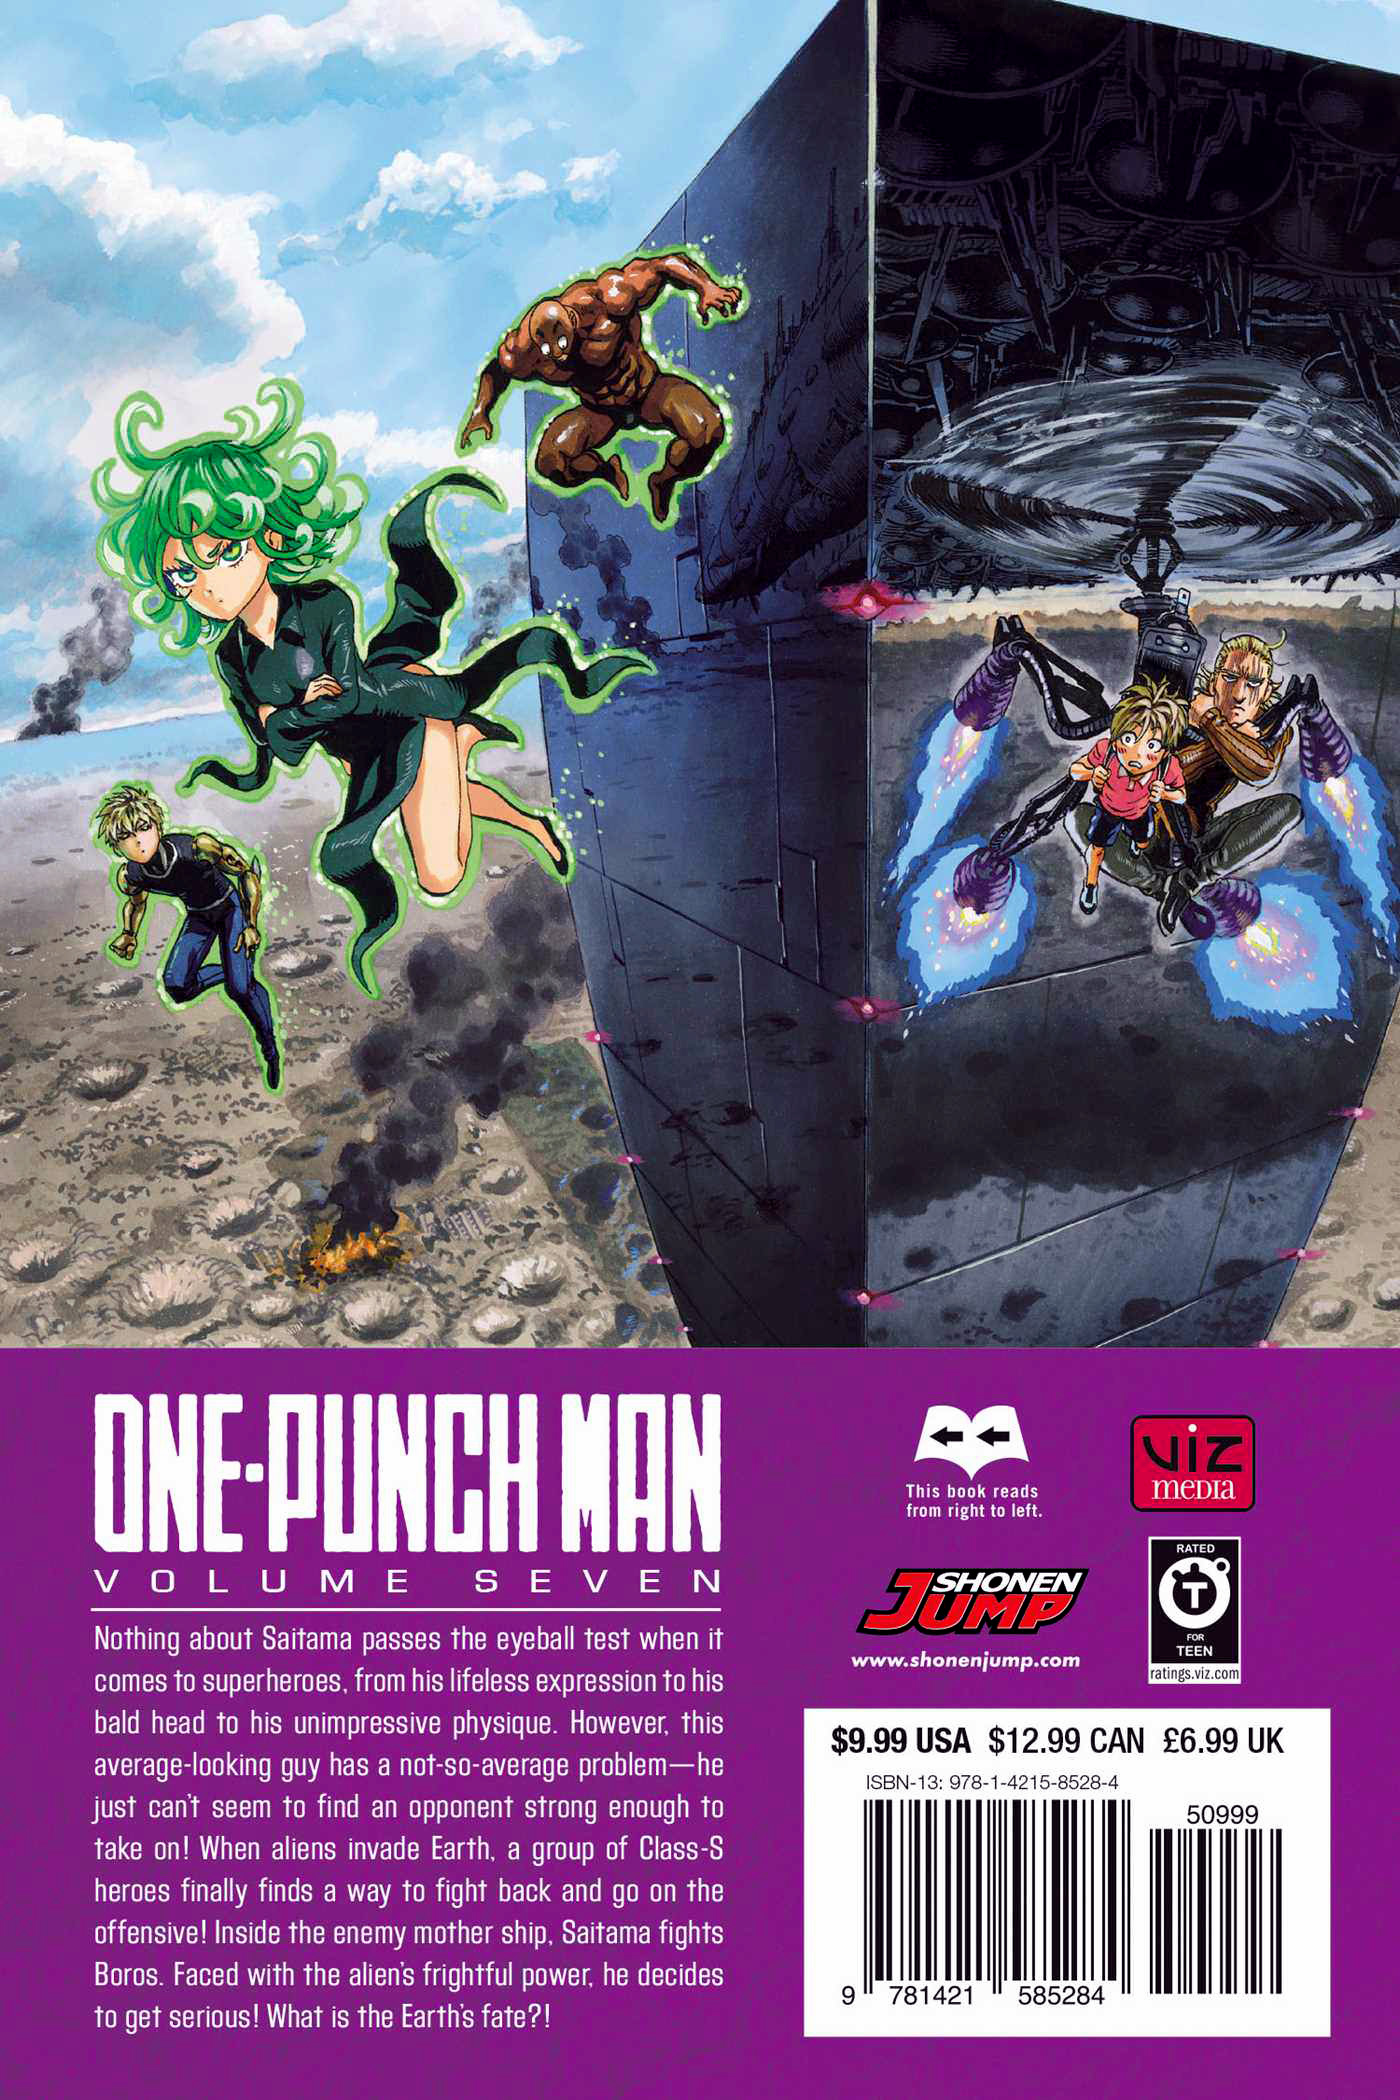 Volume 7 One Punch Man Wiki Fandom